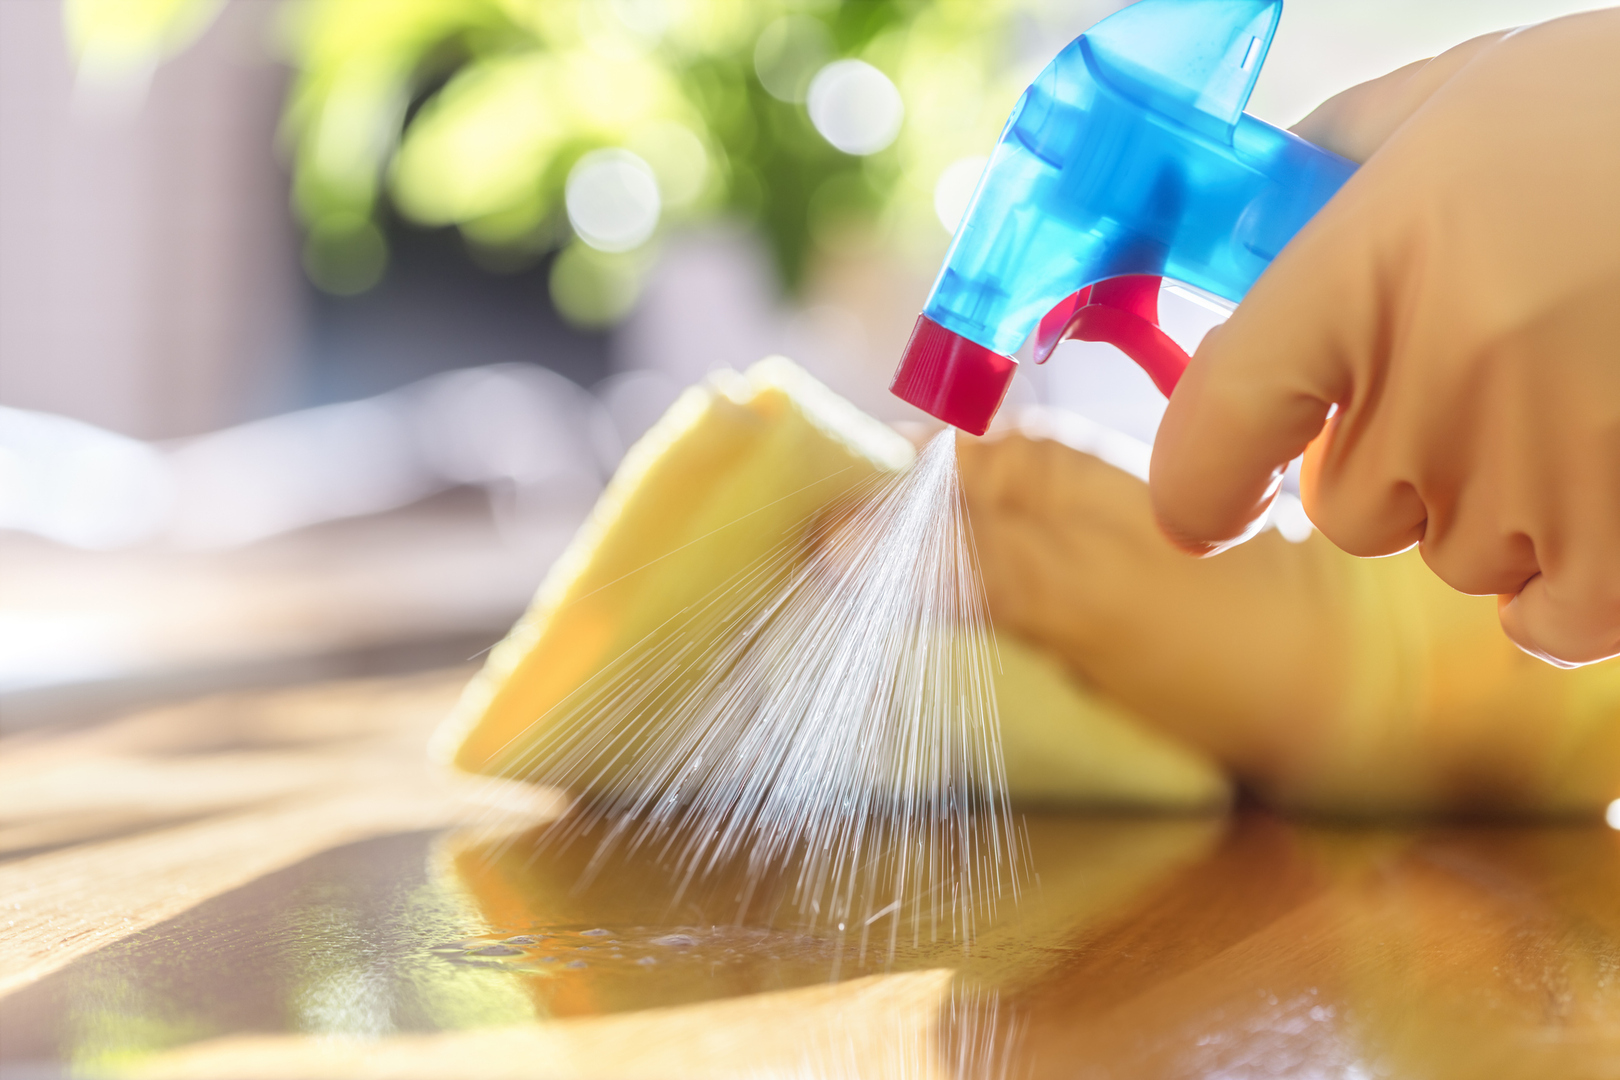 باحثون: خلط منتجين للتنظيف المنزلي قد يُحدث 